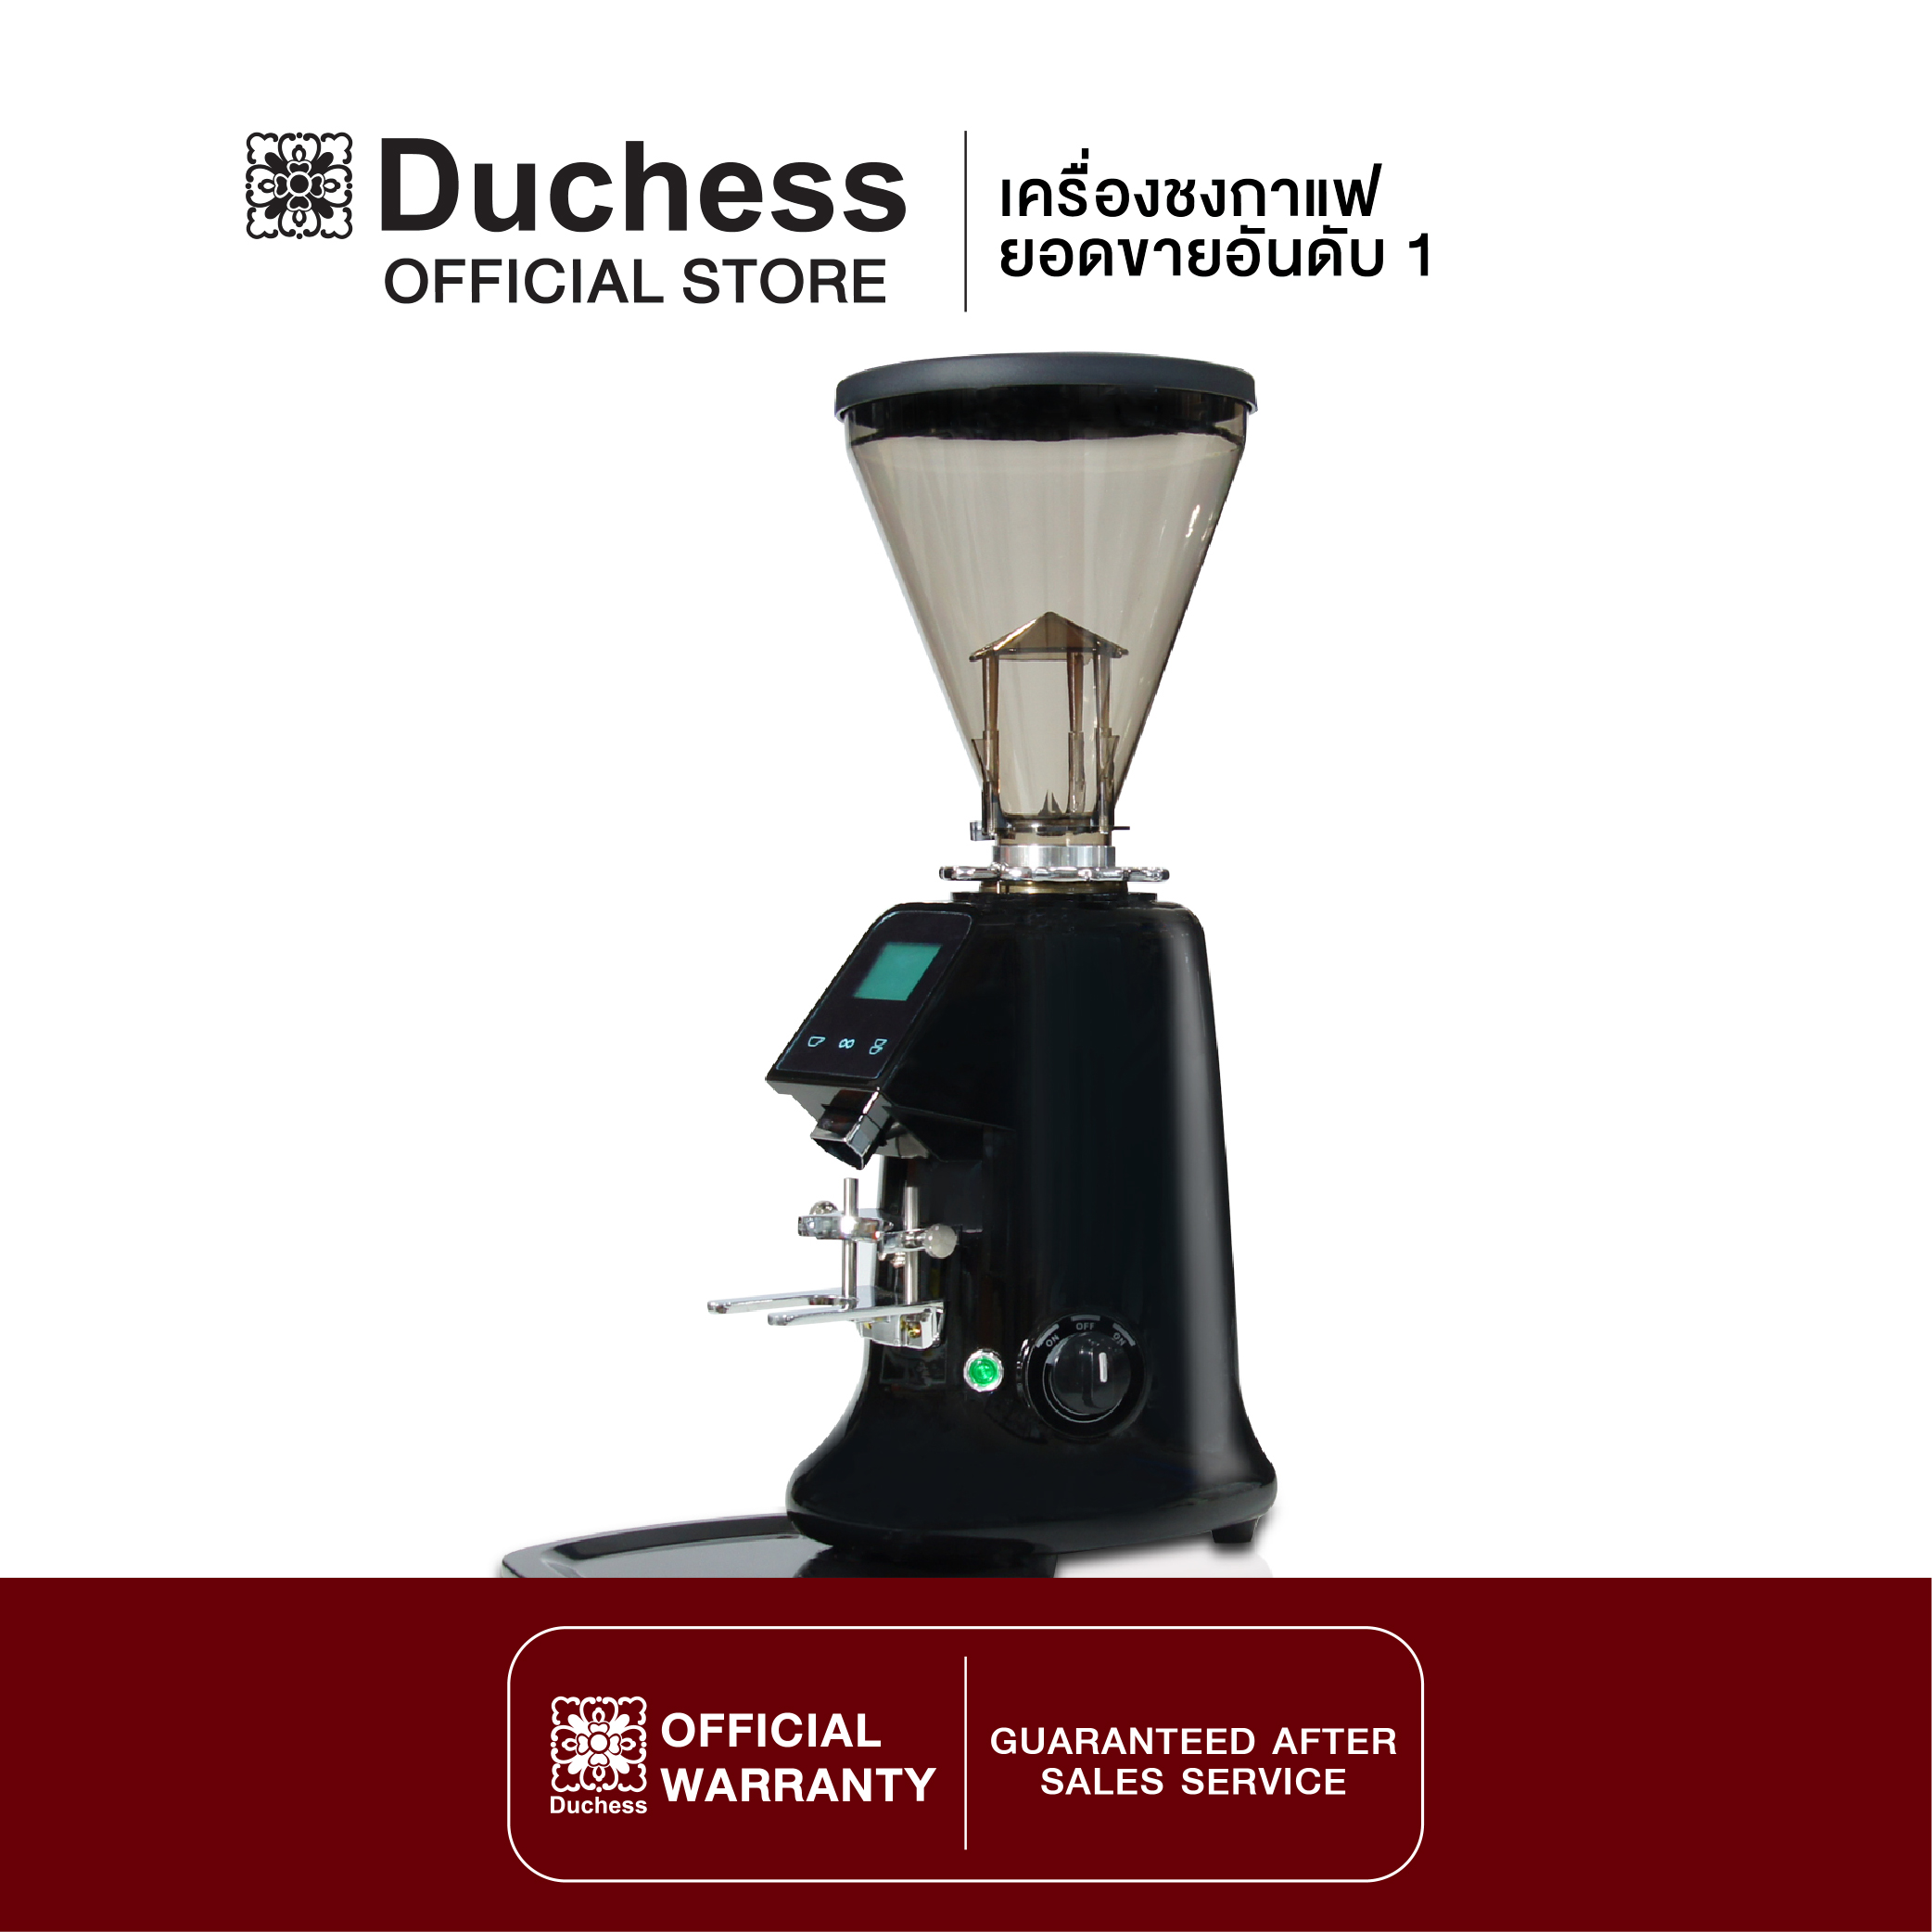 Duchess CG650 - Coffee Grinder เครื่องบดเมล็ดกาแฟ มี 3สี ให้เลือก (สีดำ/สีแดง/สีขาว) (รับประกันเครื่อง 1 ปี)